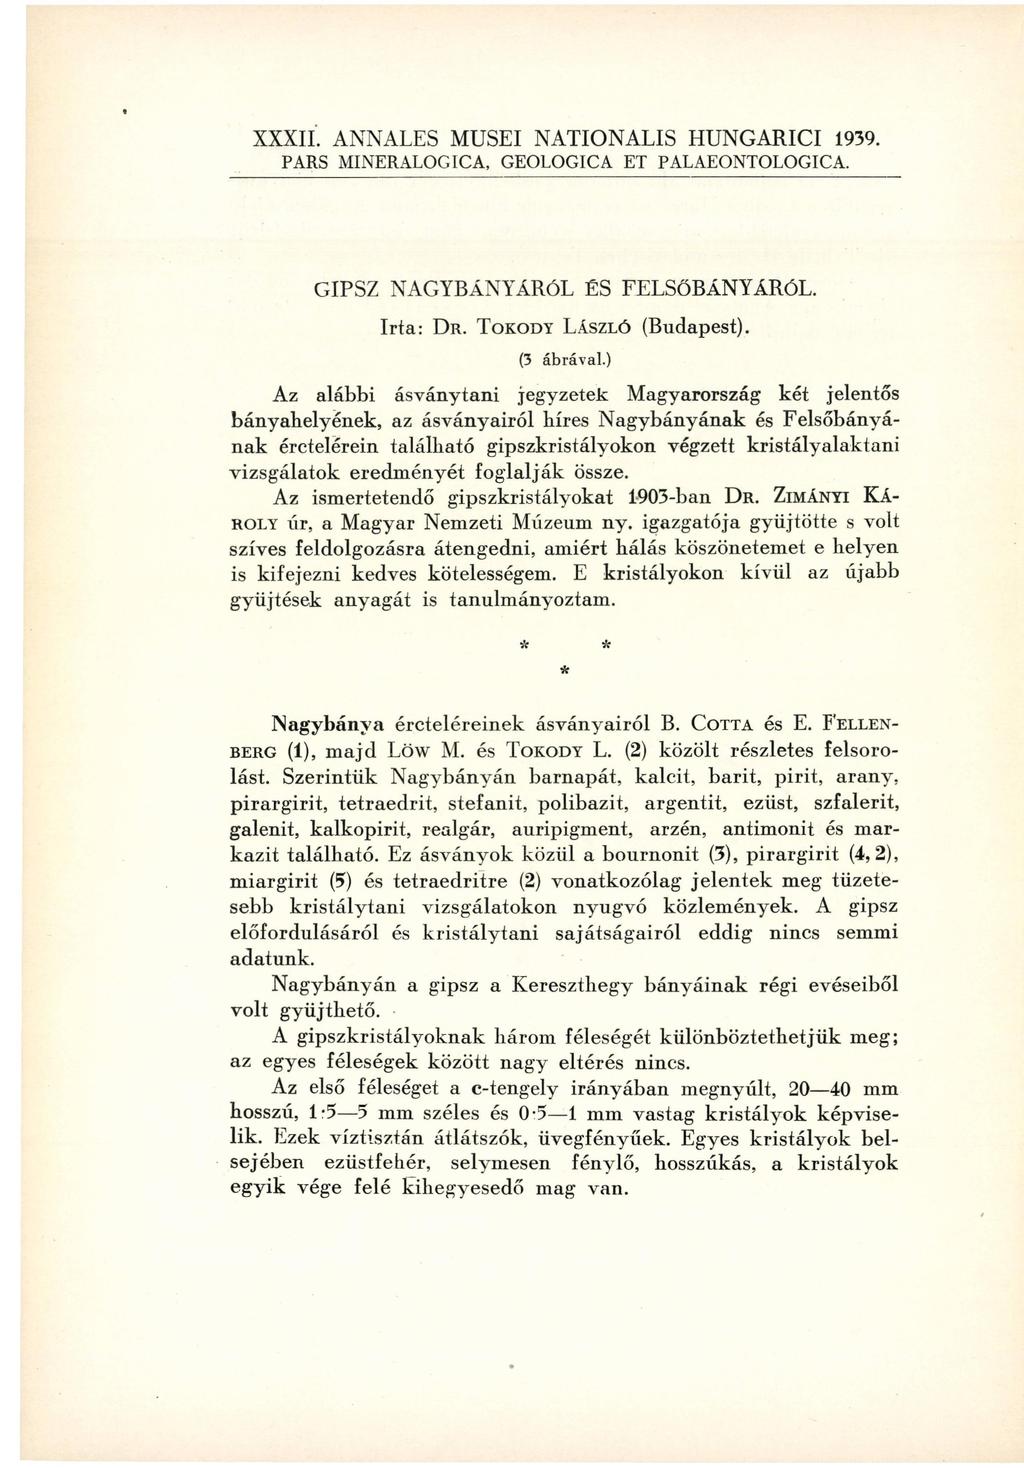 XXXII. ANNALES MUSEI NATIONALIS HUNGARICI 1939. PARS MINERALOGICA, GEOLOGICA ET PALAEONTOLOGICA. GIPSZ NAGYBÁNYÁRÓL ÉS FELSŐBÁNYÁRÓL. Irta: DR. TOKODY LÁSZLÓ (Budapest). (3 ábrával.